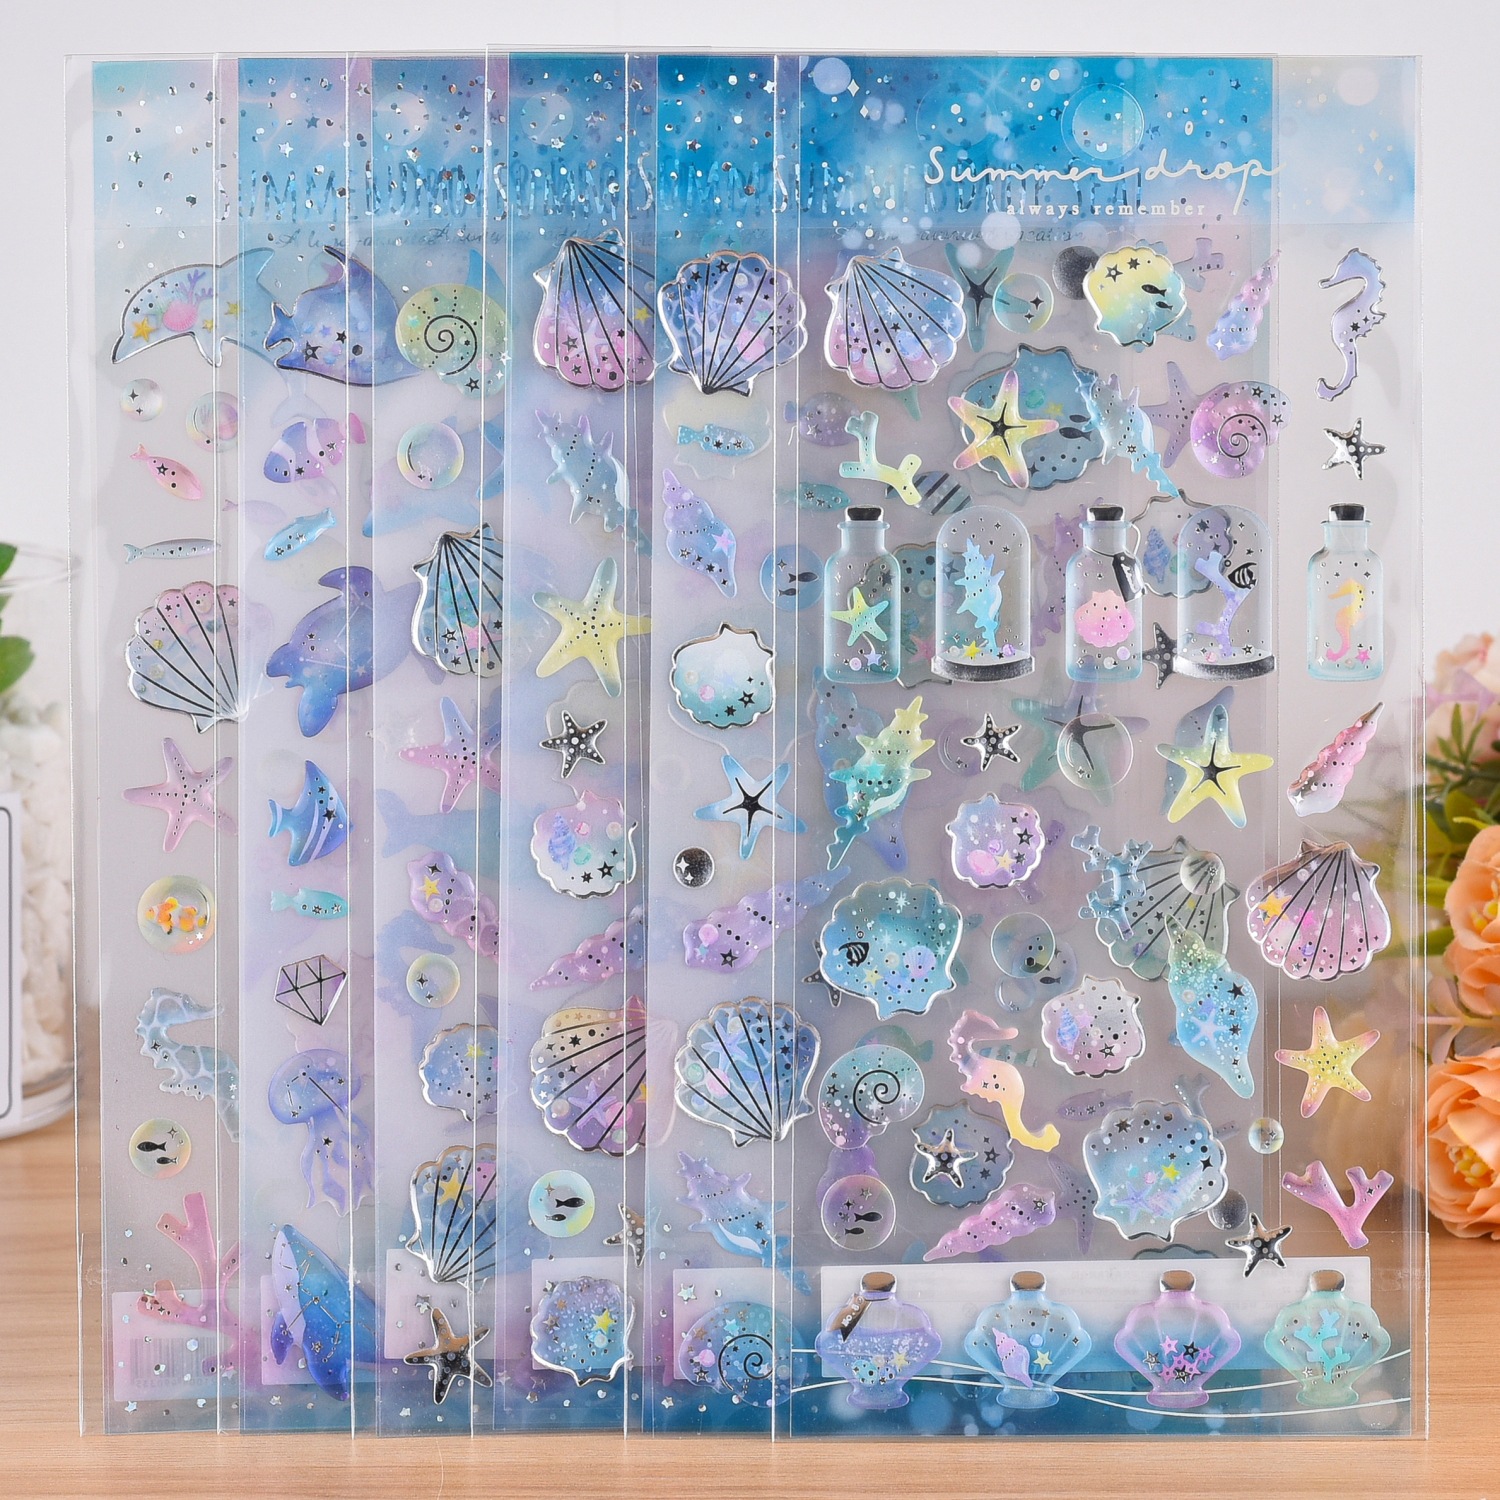 海洋小鱼水晶贴纸立体钻石儿童公主卡通手工滴胶女孩手机装饰贴画